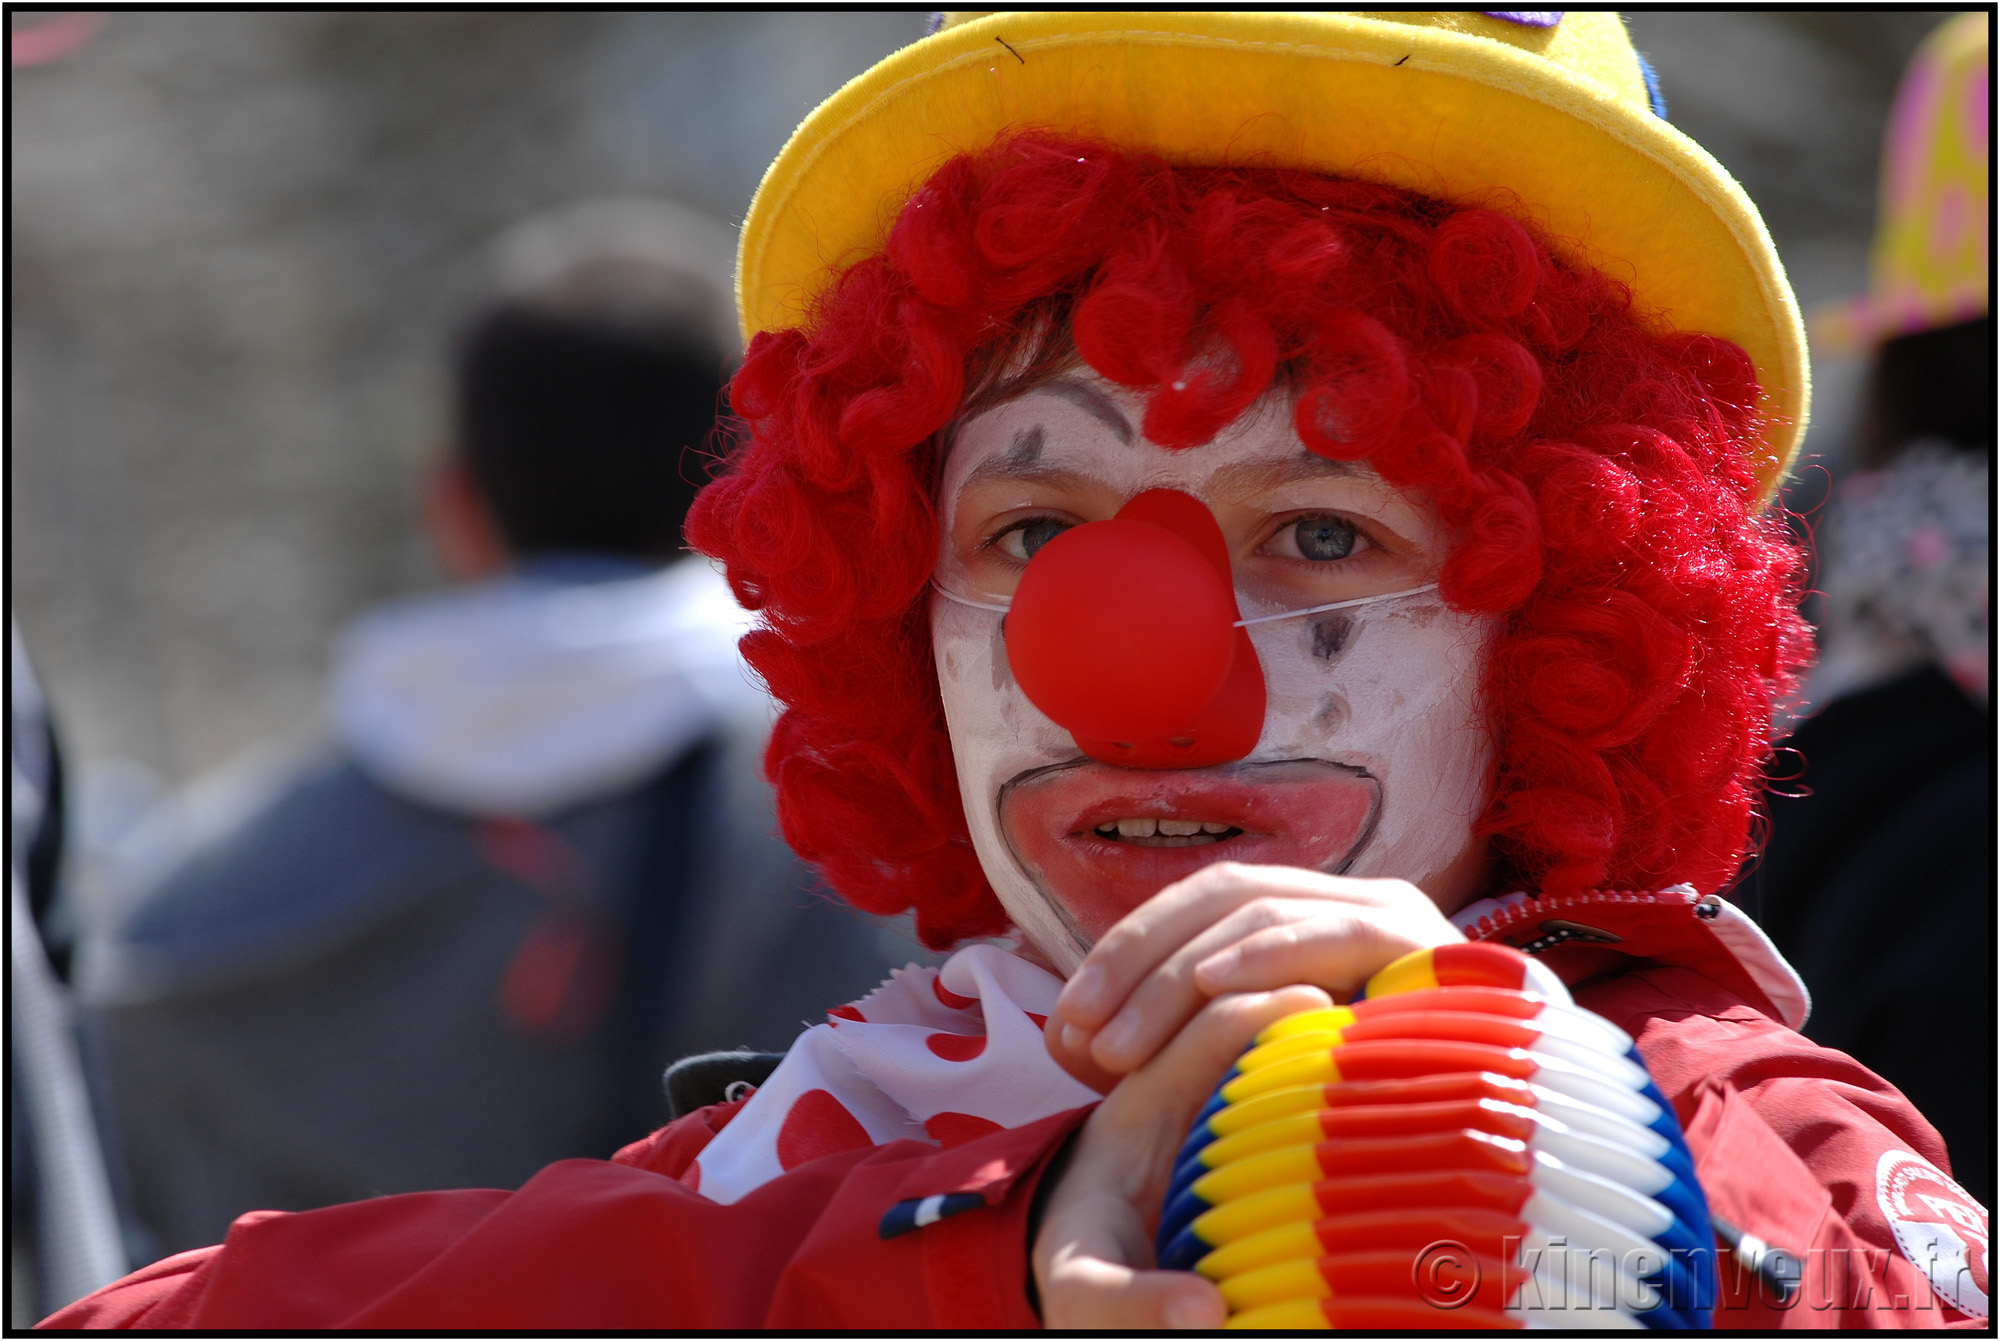 kinenveux_11_carnaval2015lr.jpg - Carnaval des Enfants 2015 - La Rochelle